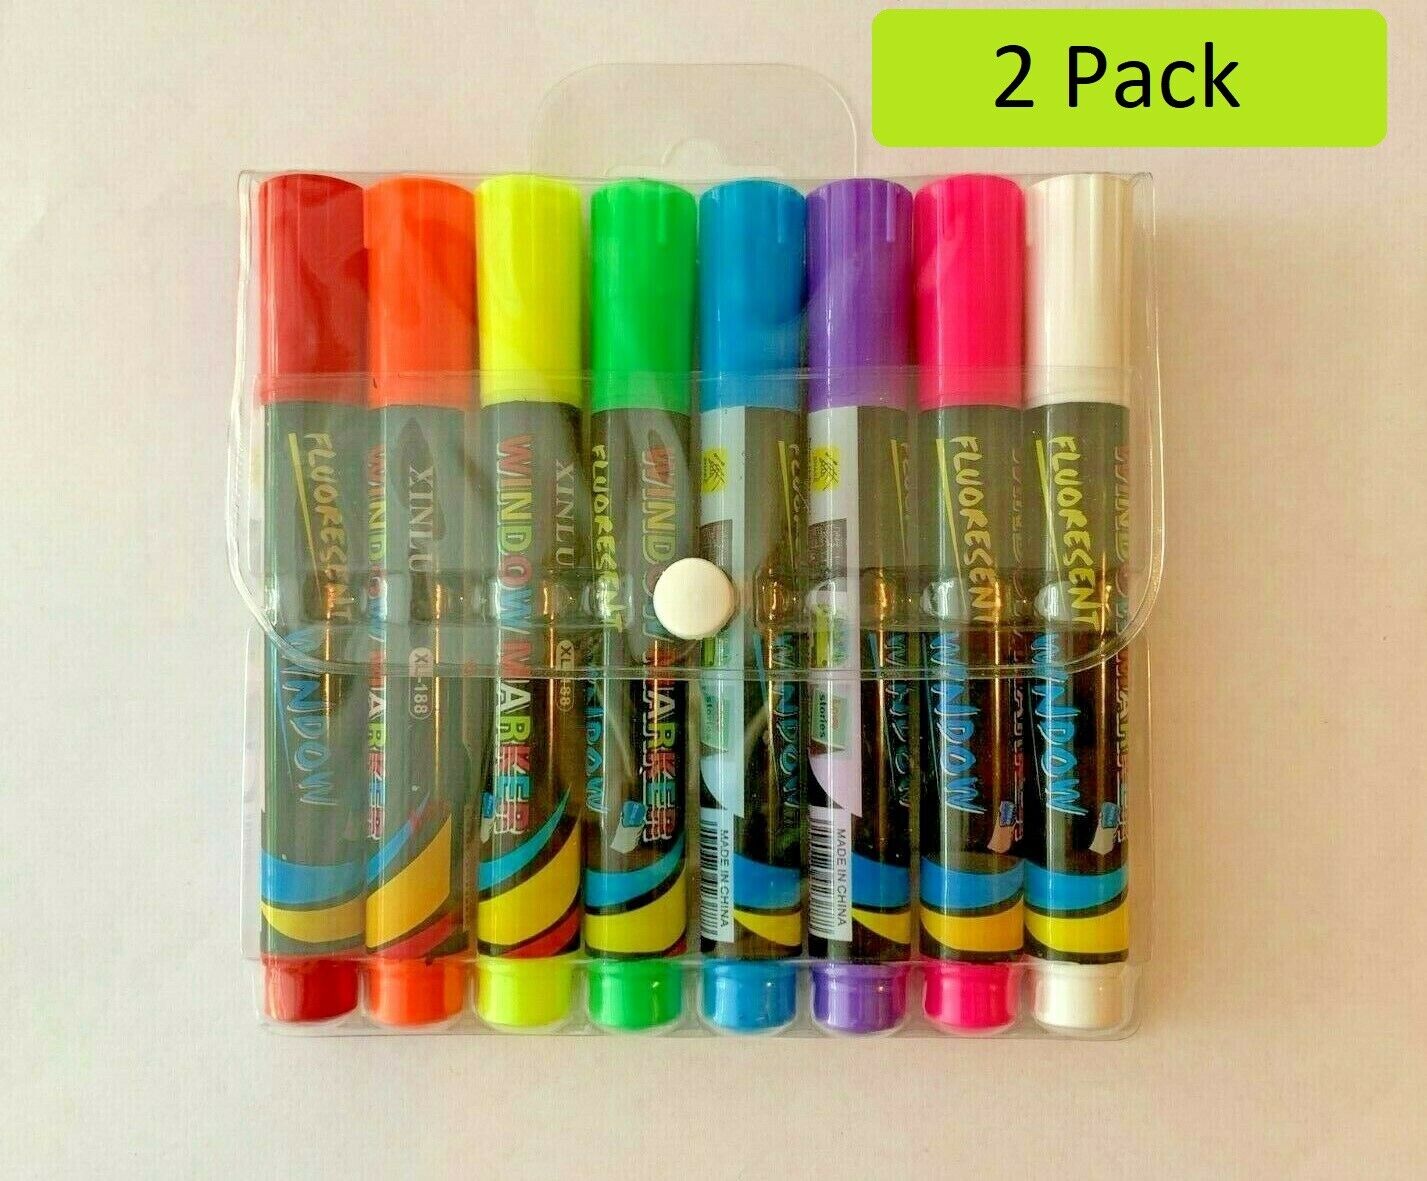 8 pcs Liquid Chalk Board Window Marker Erasable Pen Great For Chalkboard 2 Packs Unbranded Does Not Apply